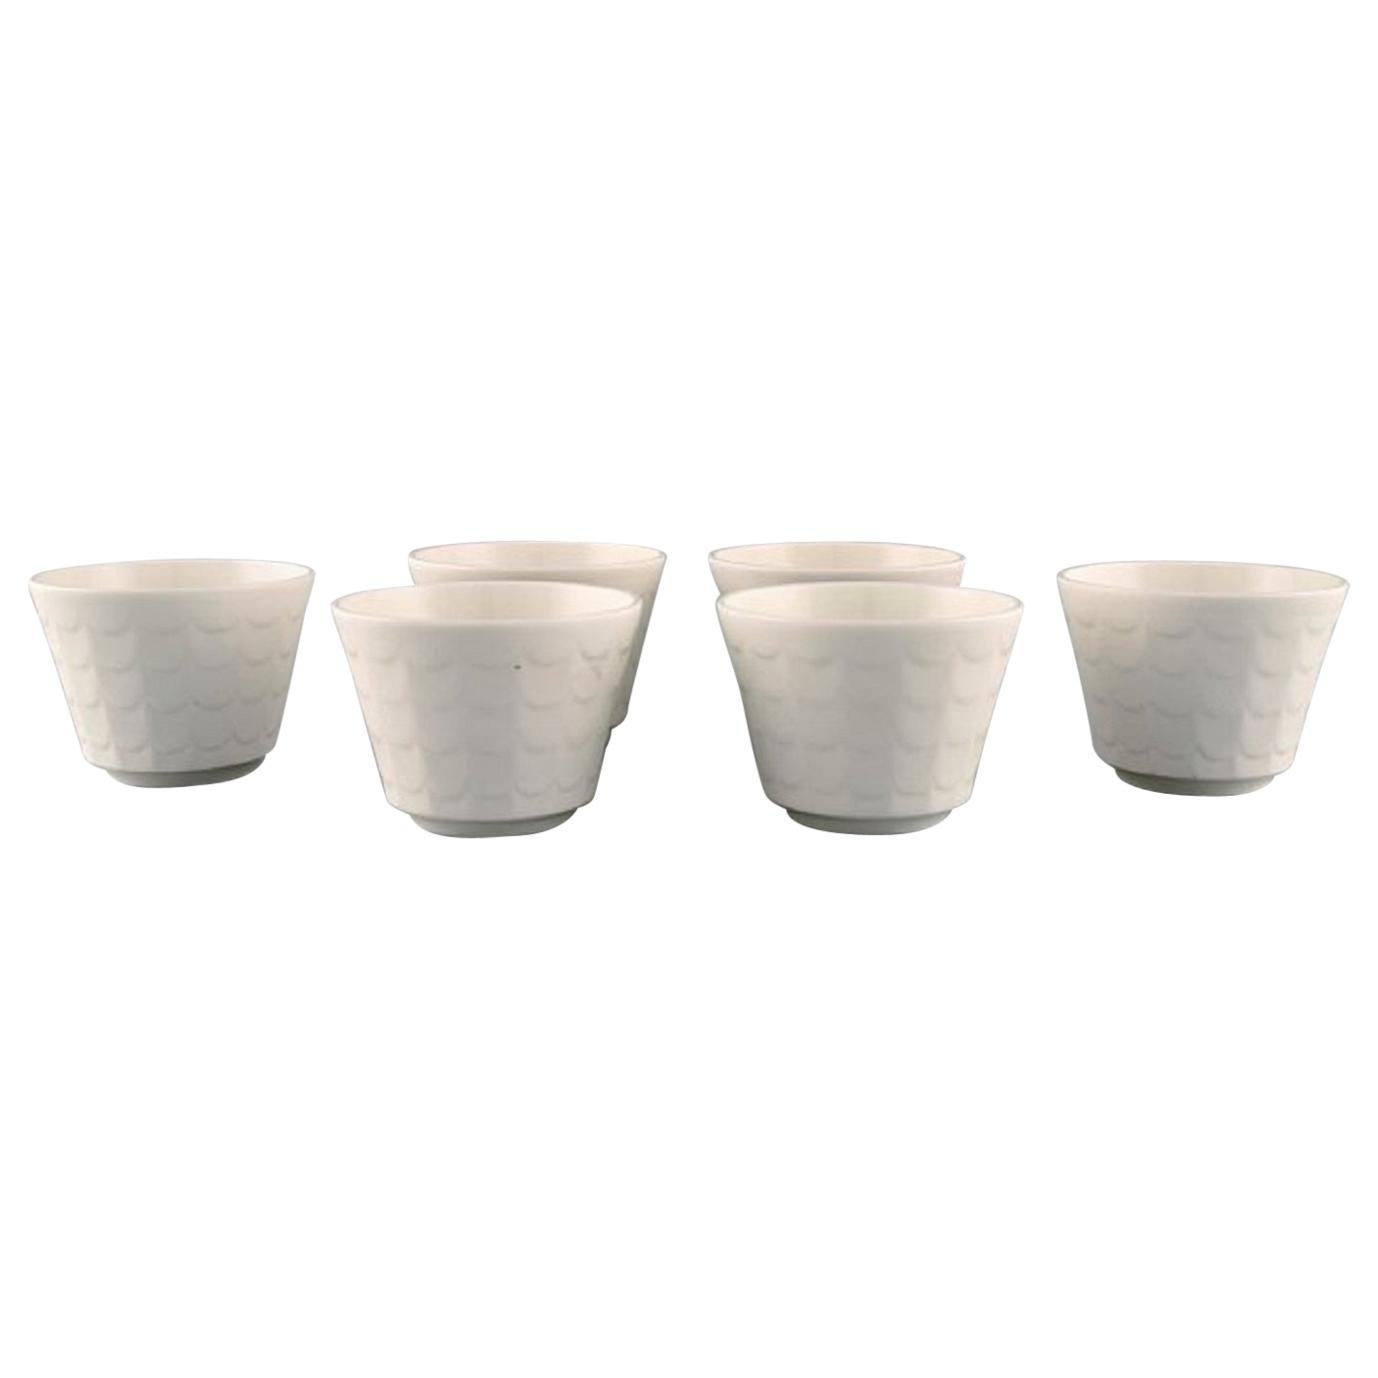 Six couvercles de pots à fleurs en porcelaine de Wilhelm Kge pour Gustavsberg